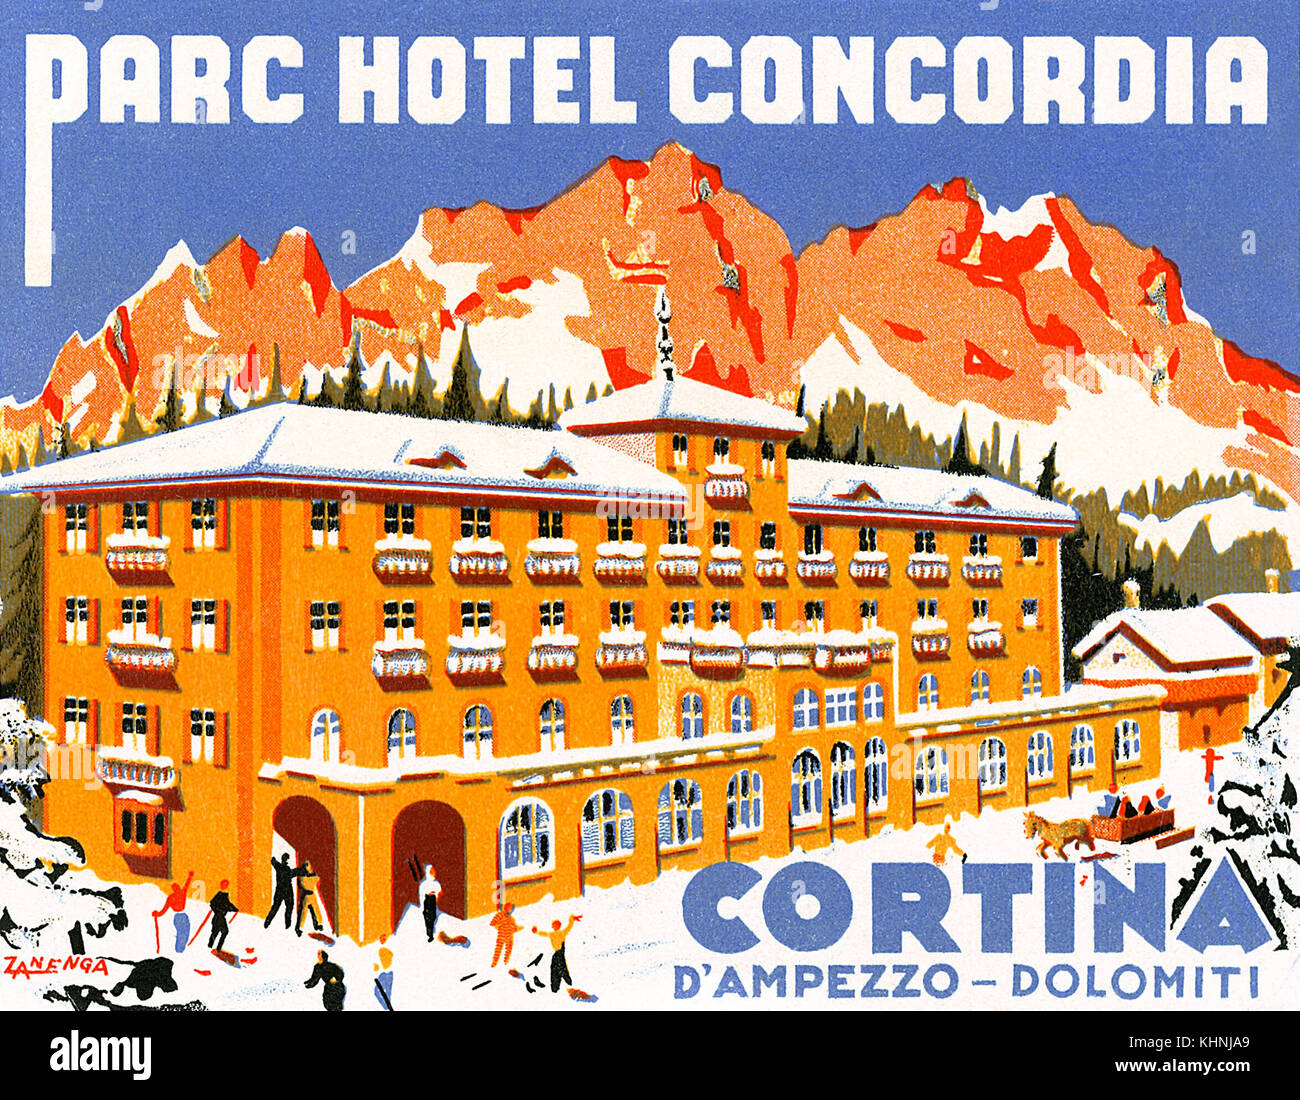 Vintage Gepäckanhänger für das Parc Hotel Concordia in Cortina d'Ampezzo in den italienischen Alpen. Jetzt Hotel Concordia genannt. Stockfoto